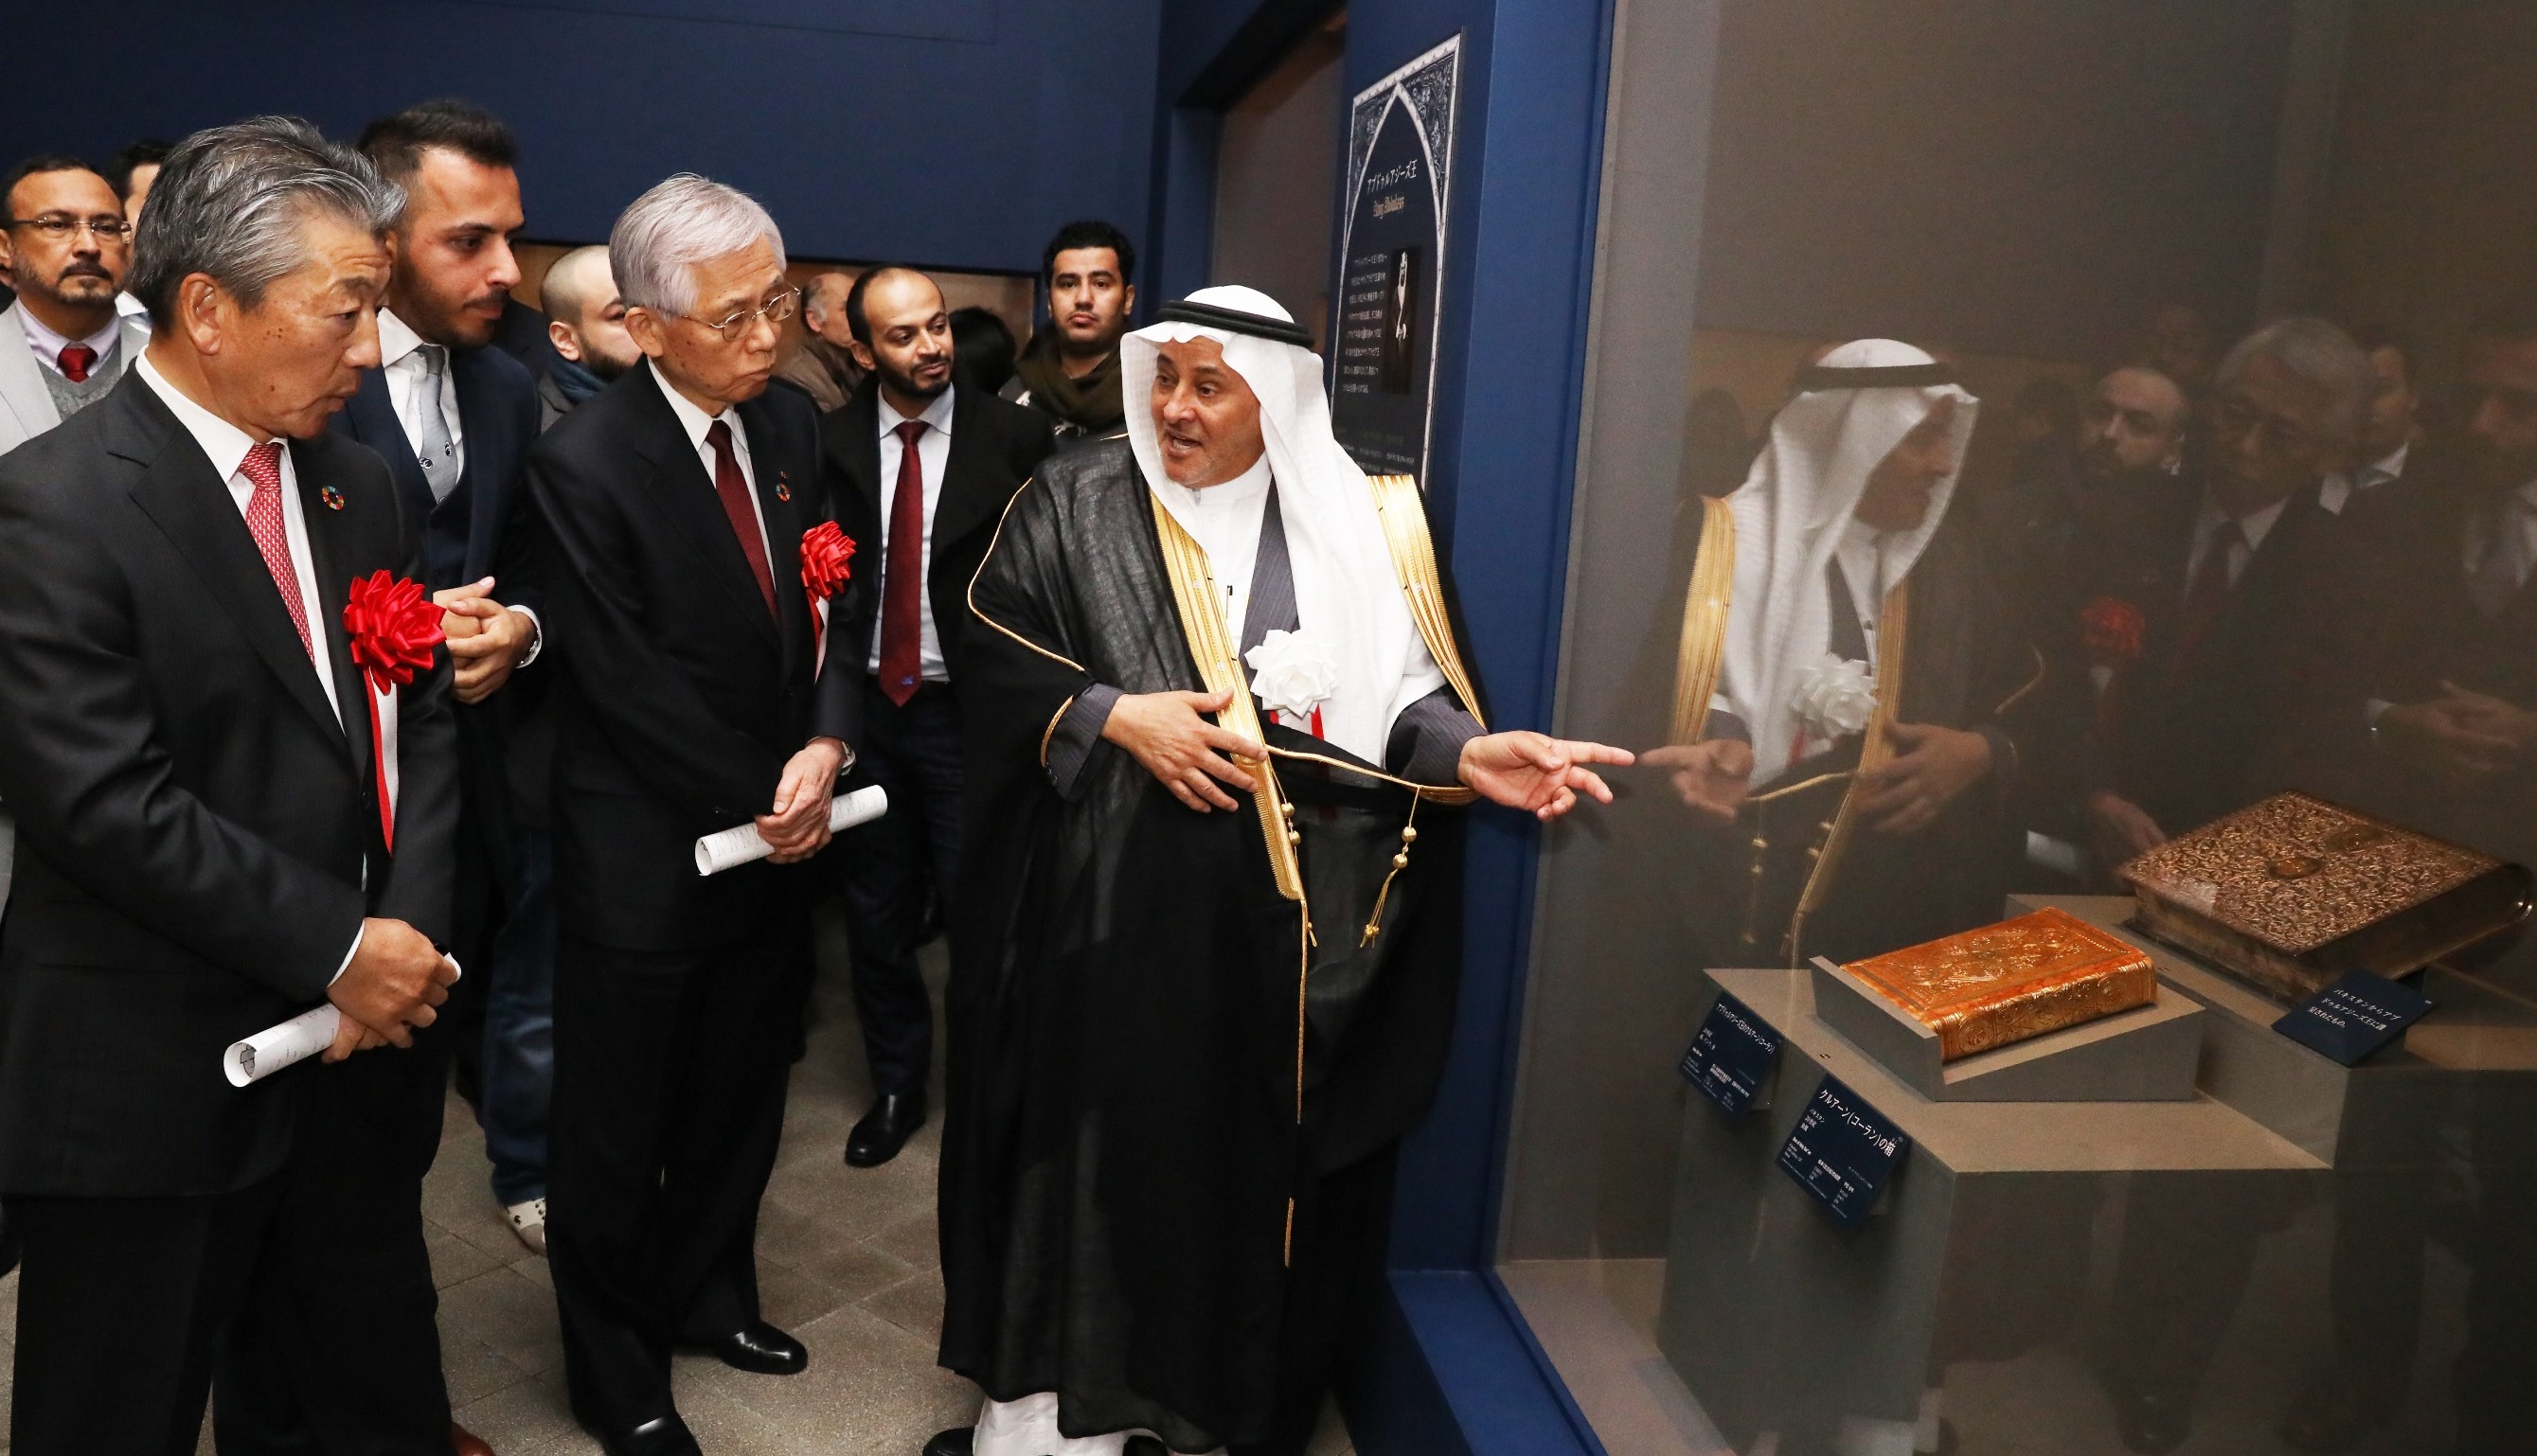 معرض روائع آثار السعودية سفير متقدم لتعريف اليابانيين بحضارات المملكة